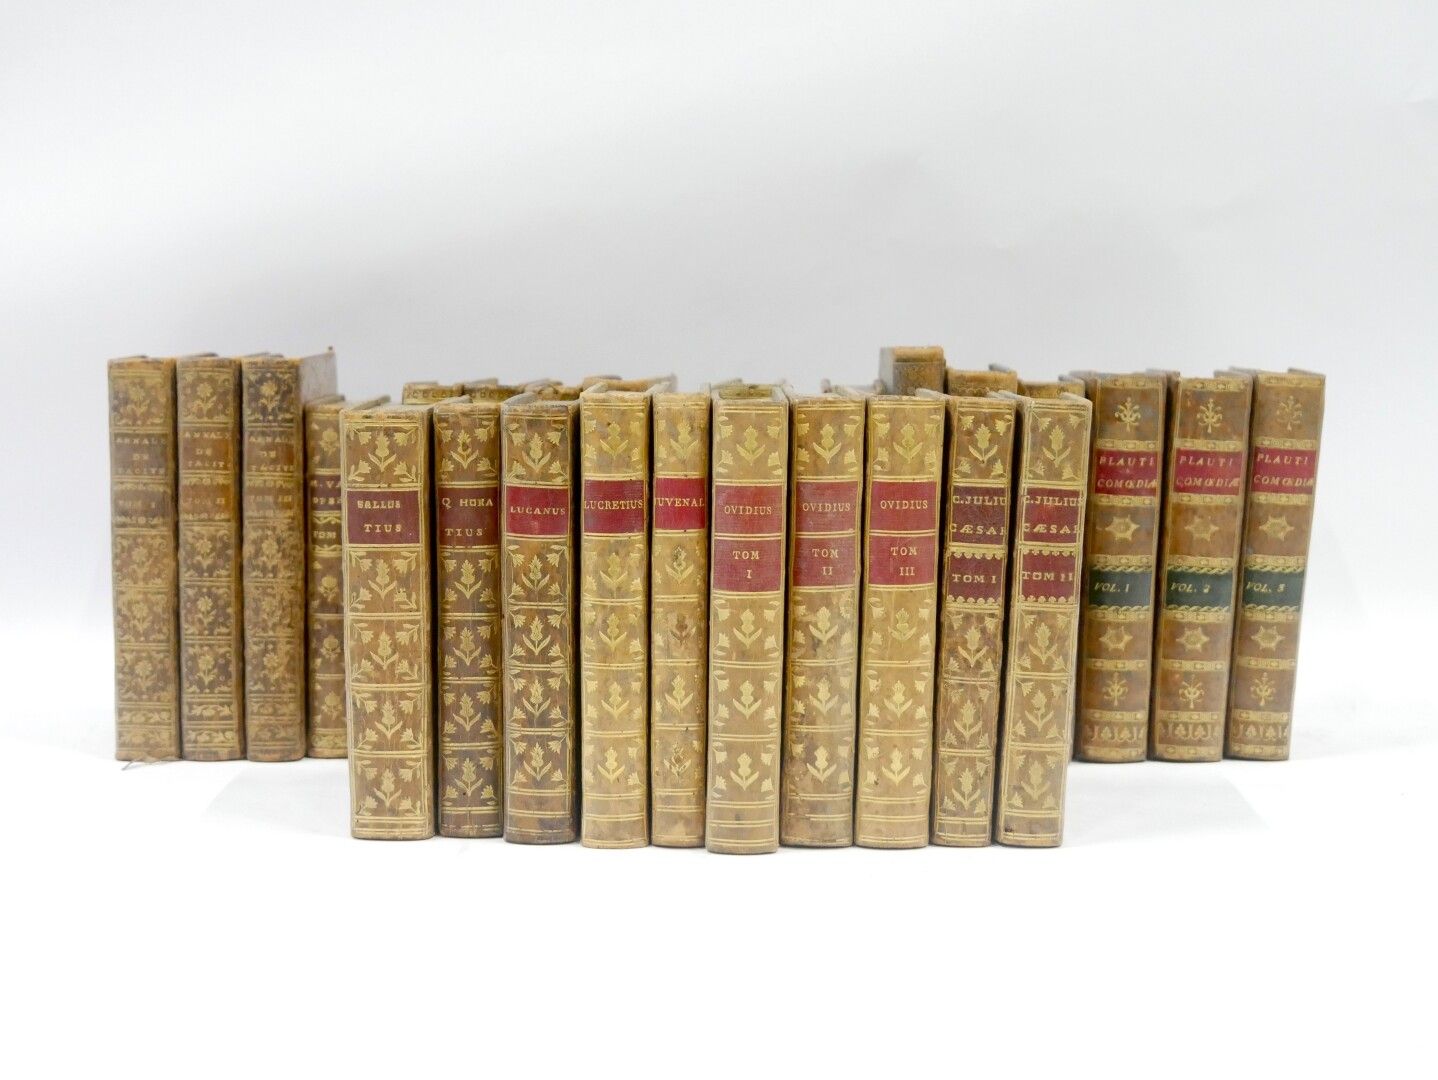 Null CLASSICI - 18° SECOLO

Set di 29 volumi tra cui: 

- C. CORNELII, Taciti, P&hellip;